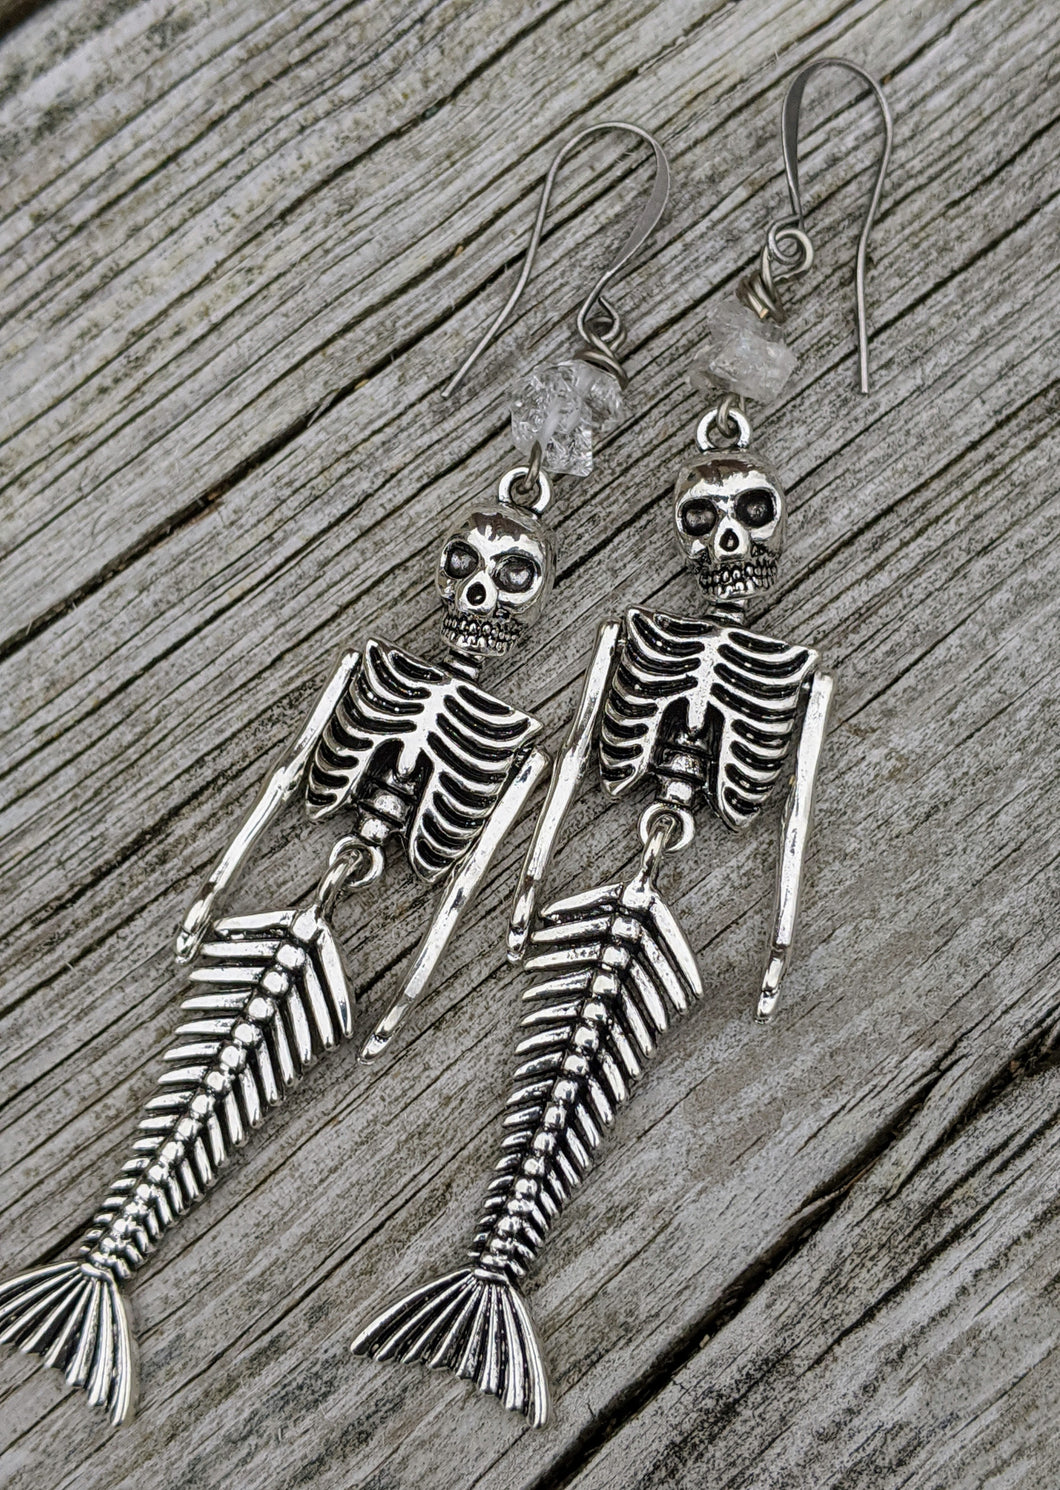 Skeleton Mermaid Earrings with Herkimer Diamonds - Minxes' Trinkets